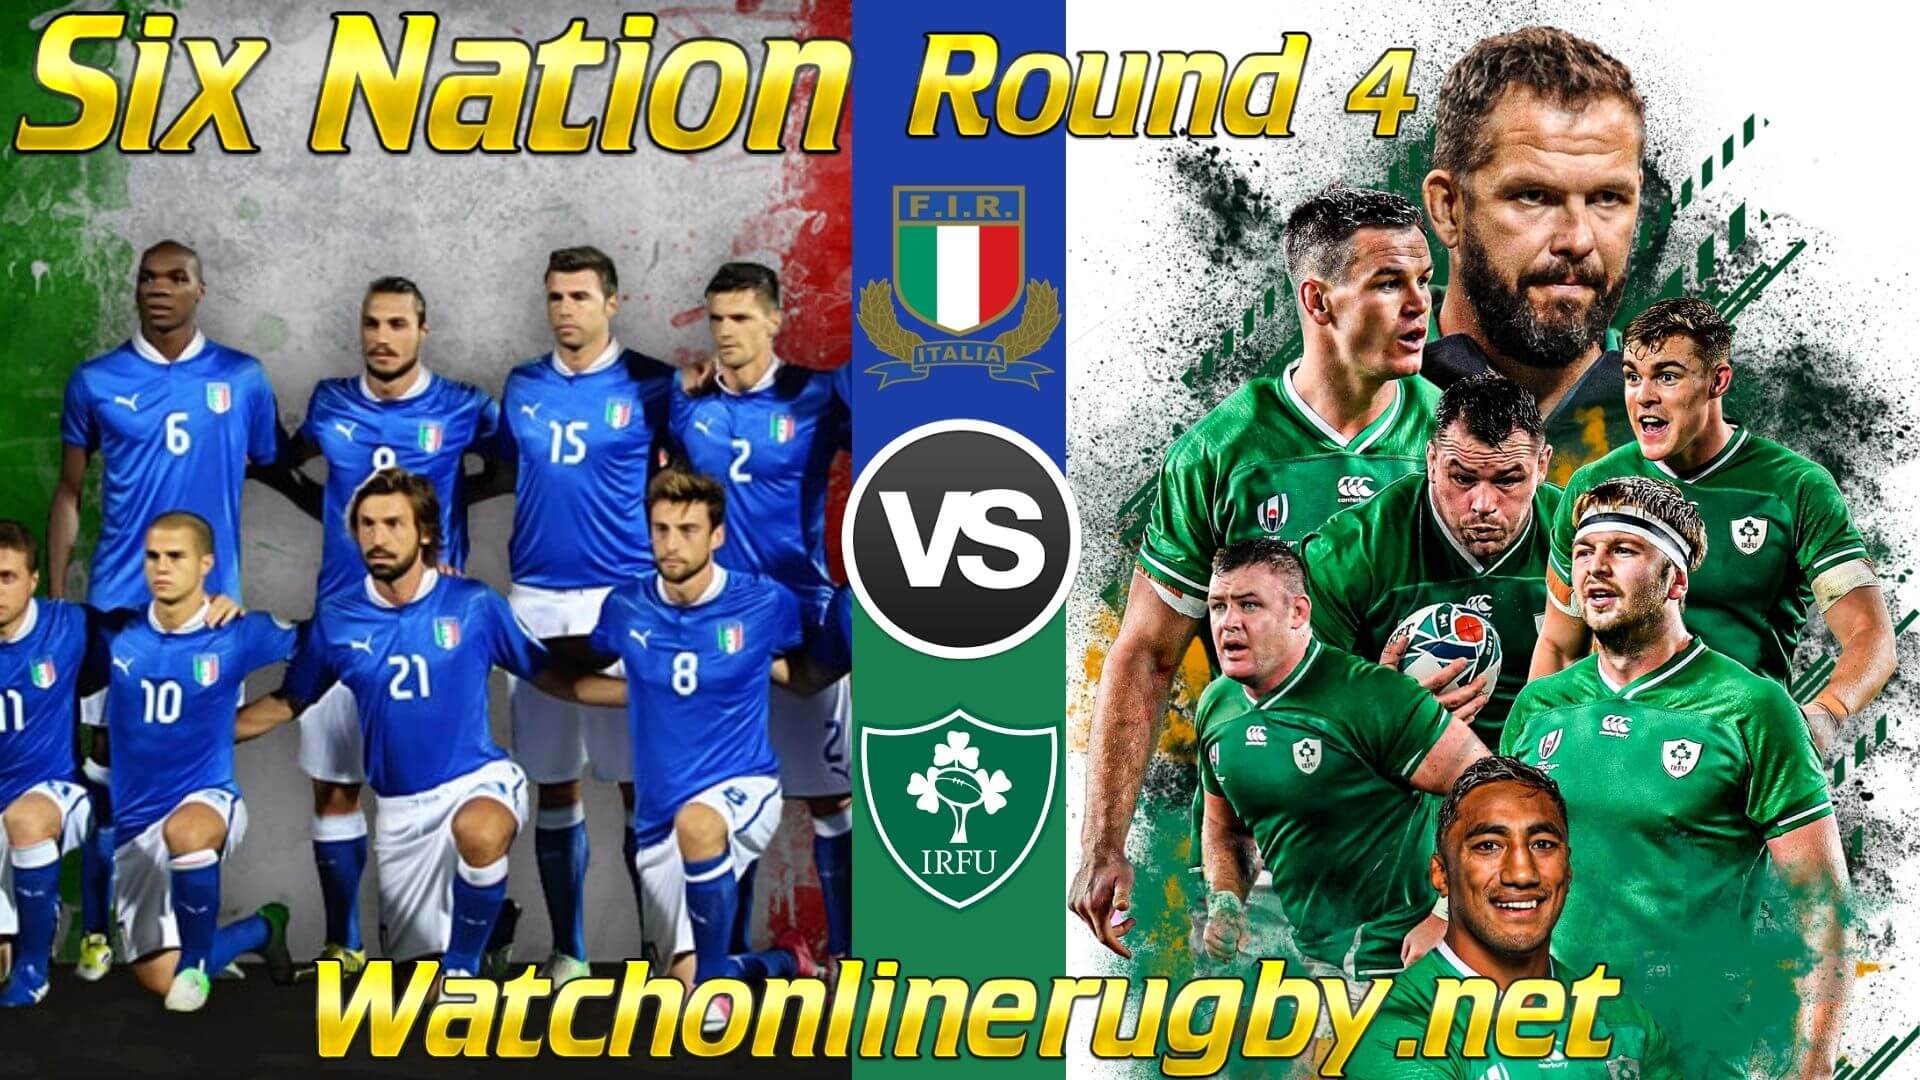 2018 Six Nations Italy vs Ireland Live